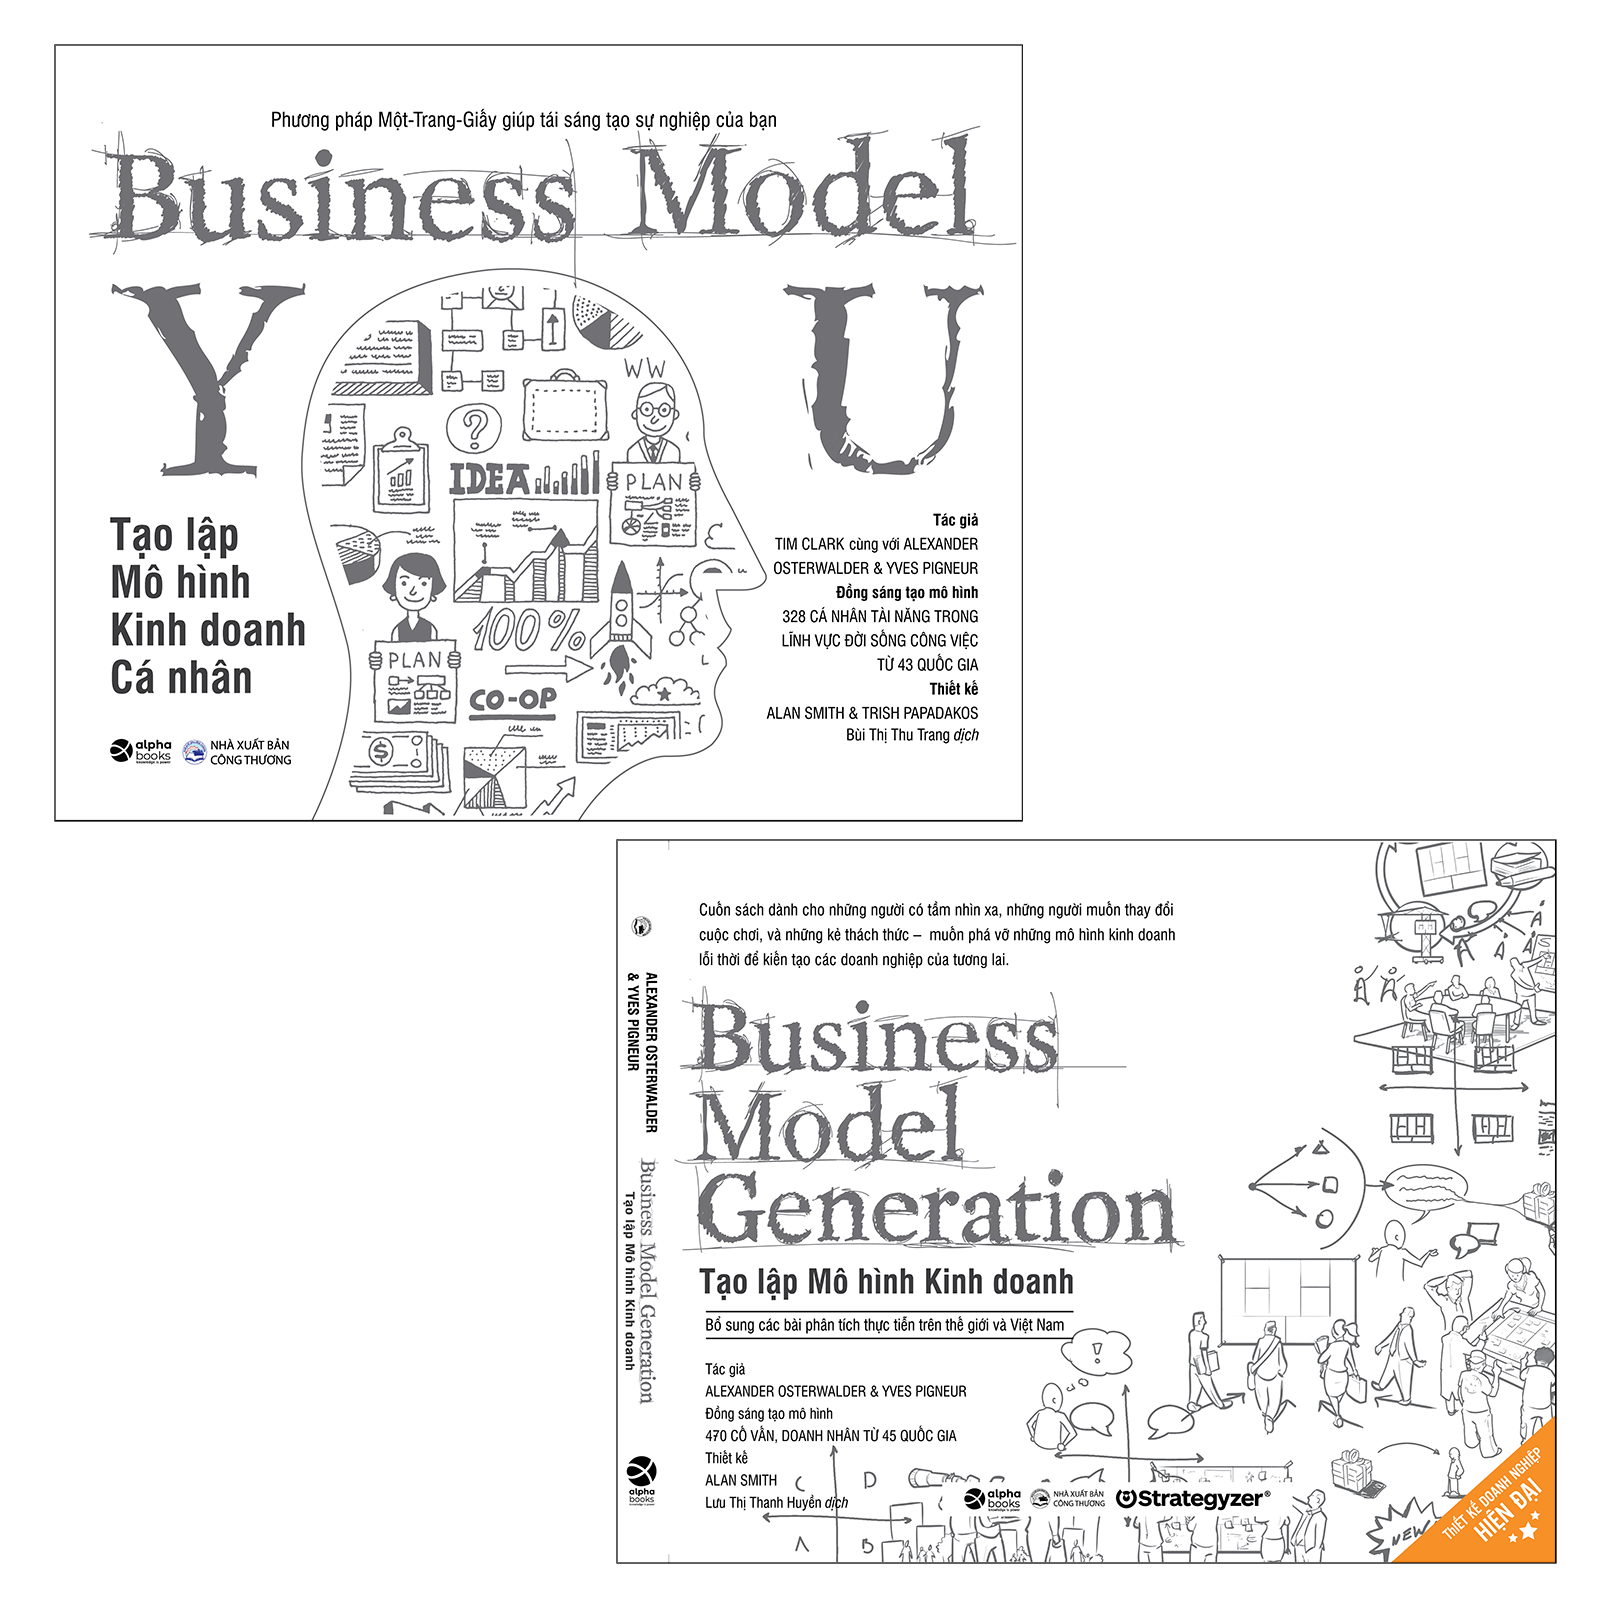 Trạm Đọc Official |  Business Model Generation - Tạo Lập Mô Hình Kinh Doanh + Tạo Lập Mô Hình Kinh Doanh Cá Nhân